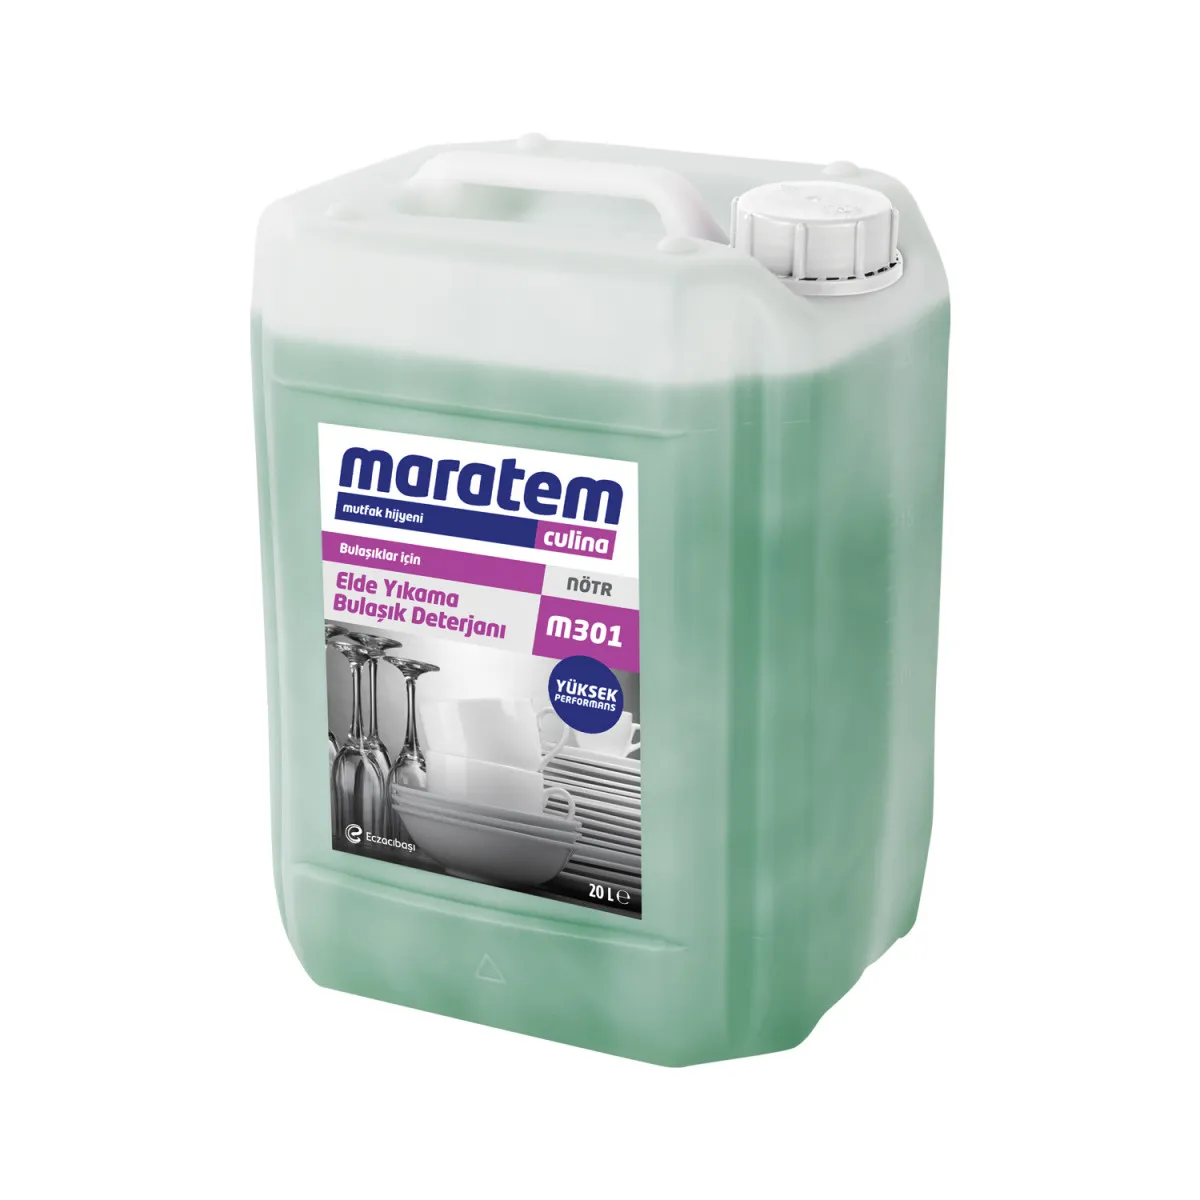 Средство для ручного мытья посуды Маratem M315 5л/ М301#2